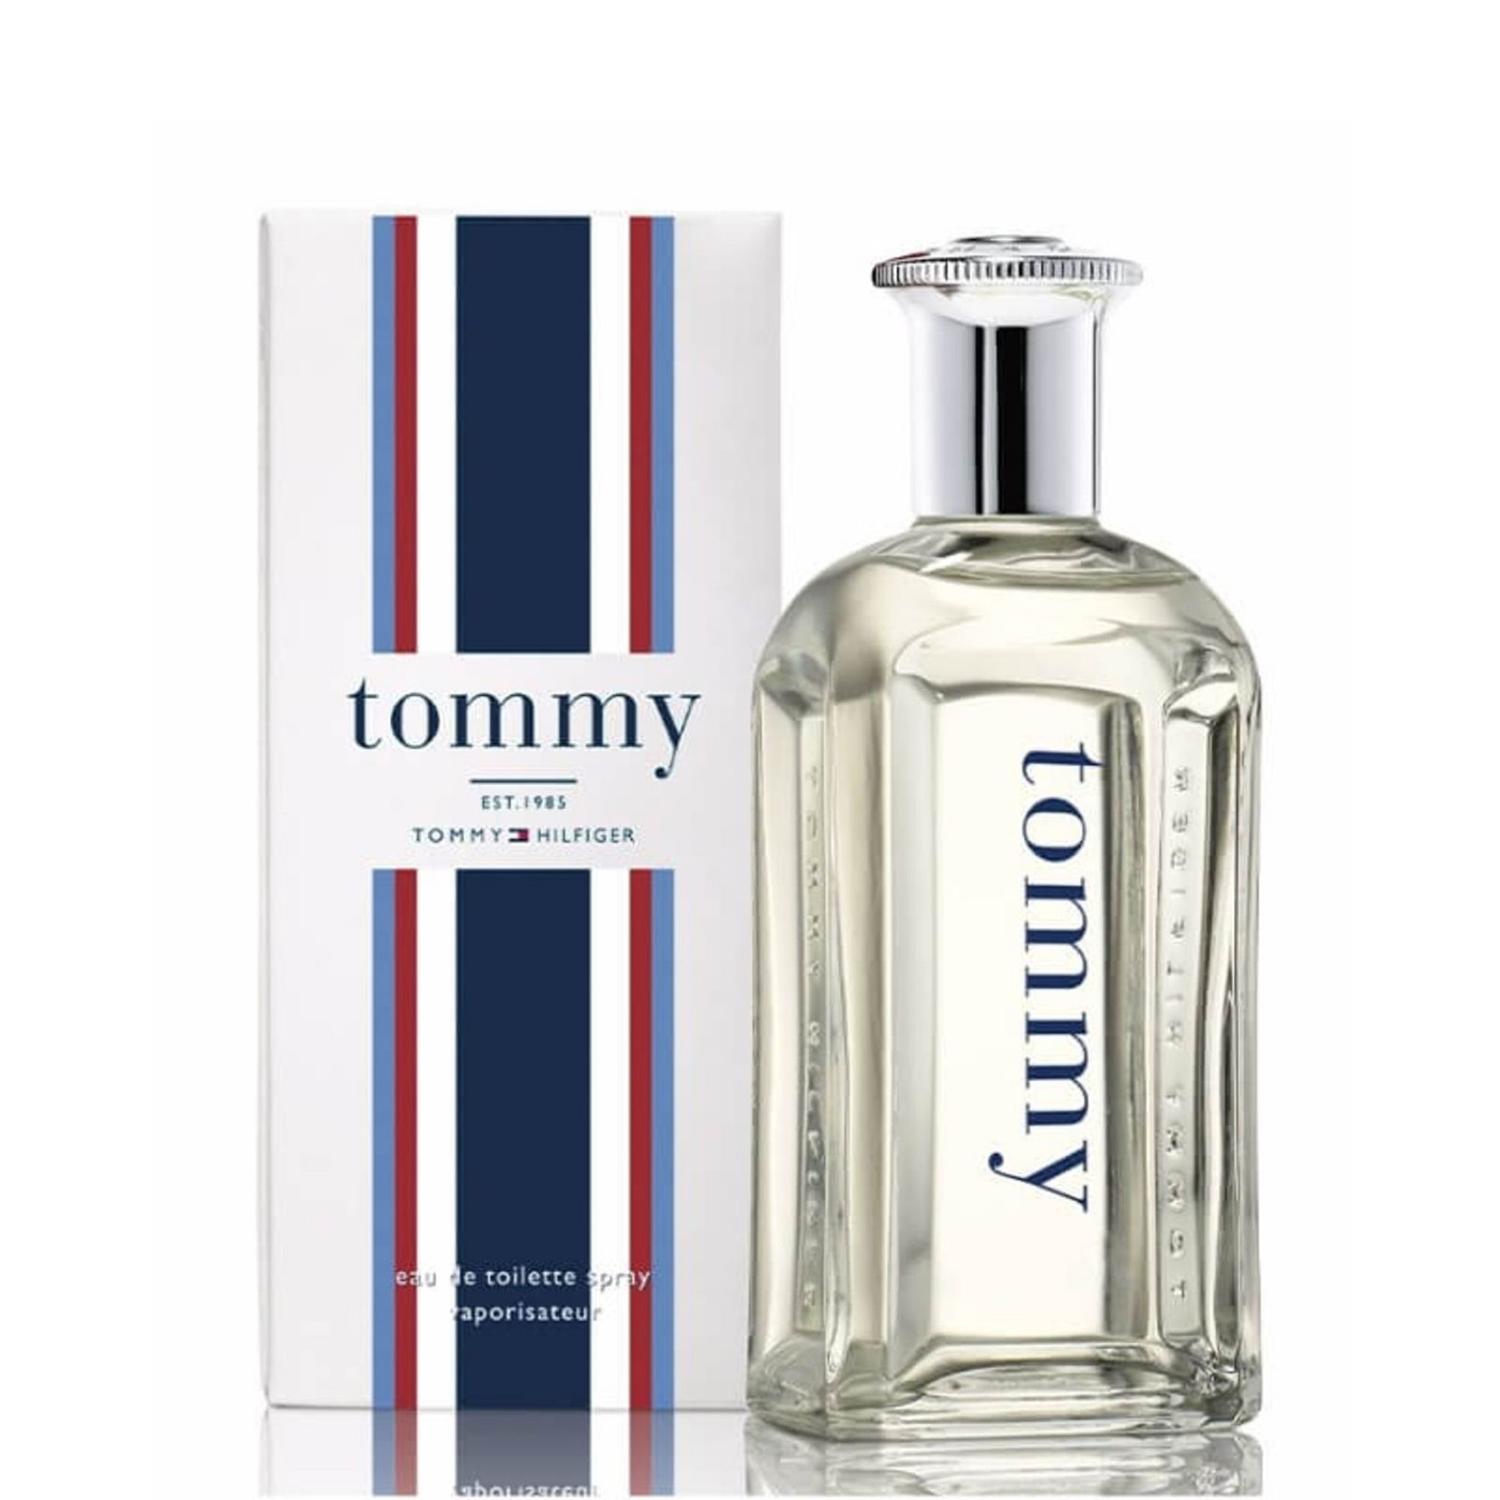 Perfume EAU Toilette Tommy Hombres - 50 ml.